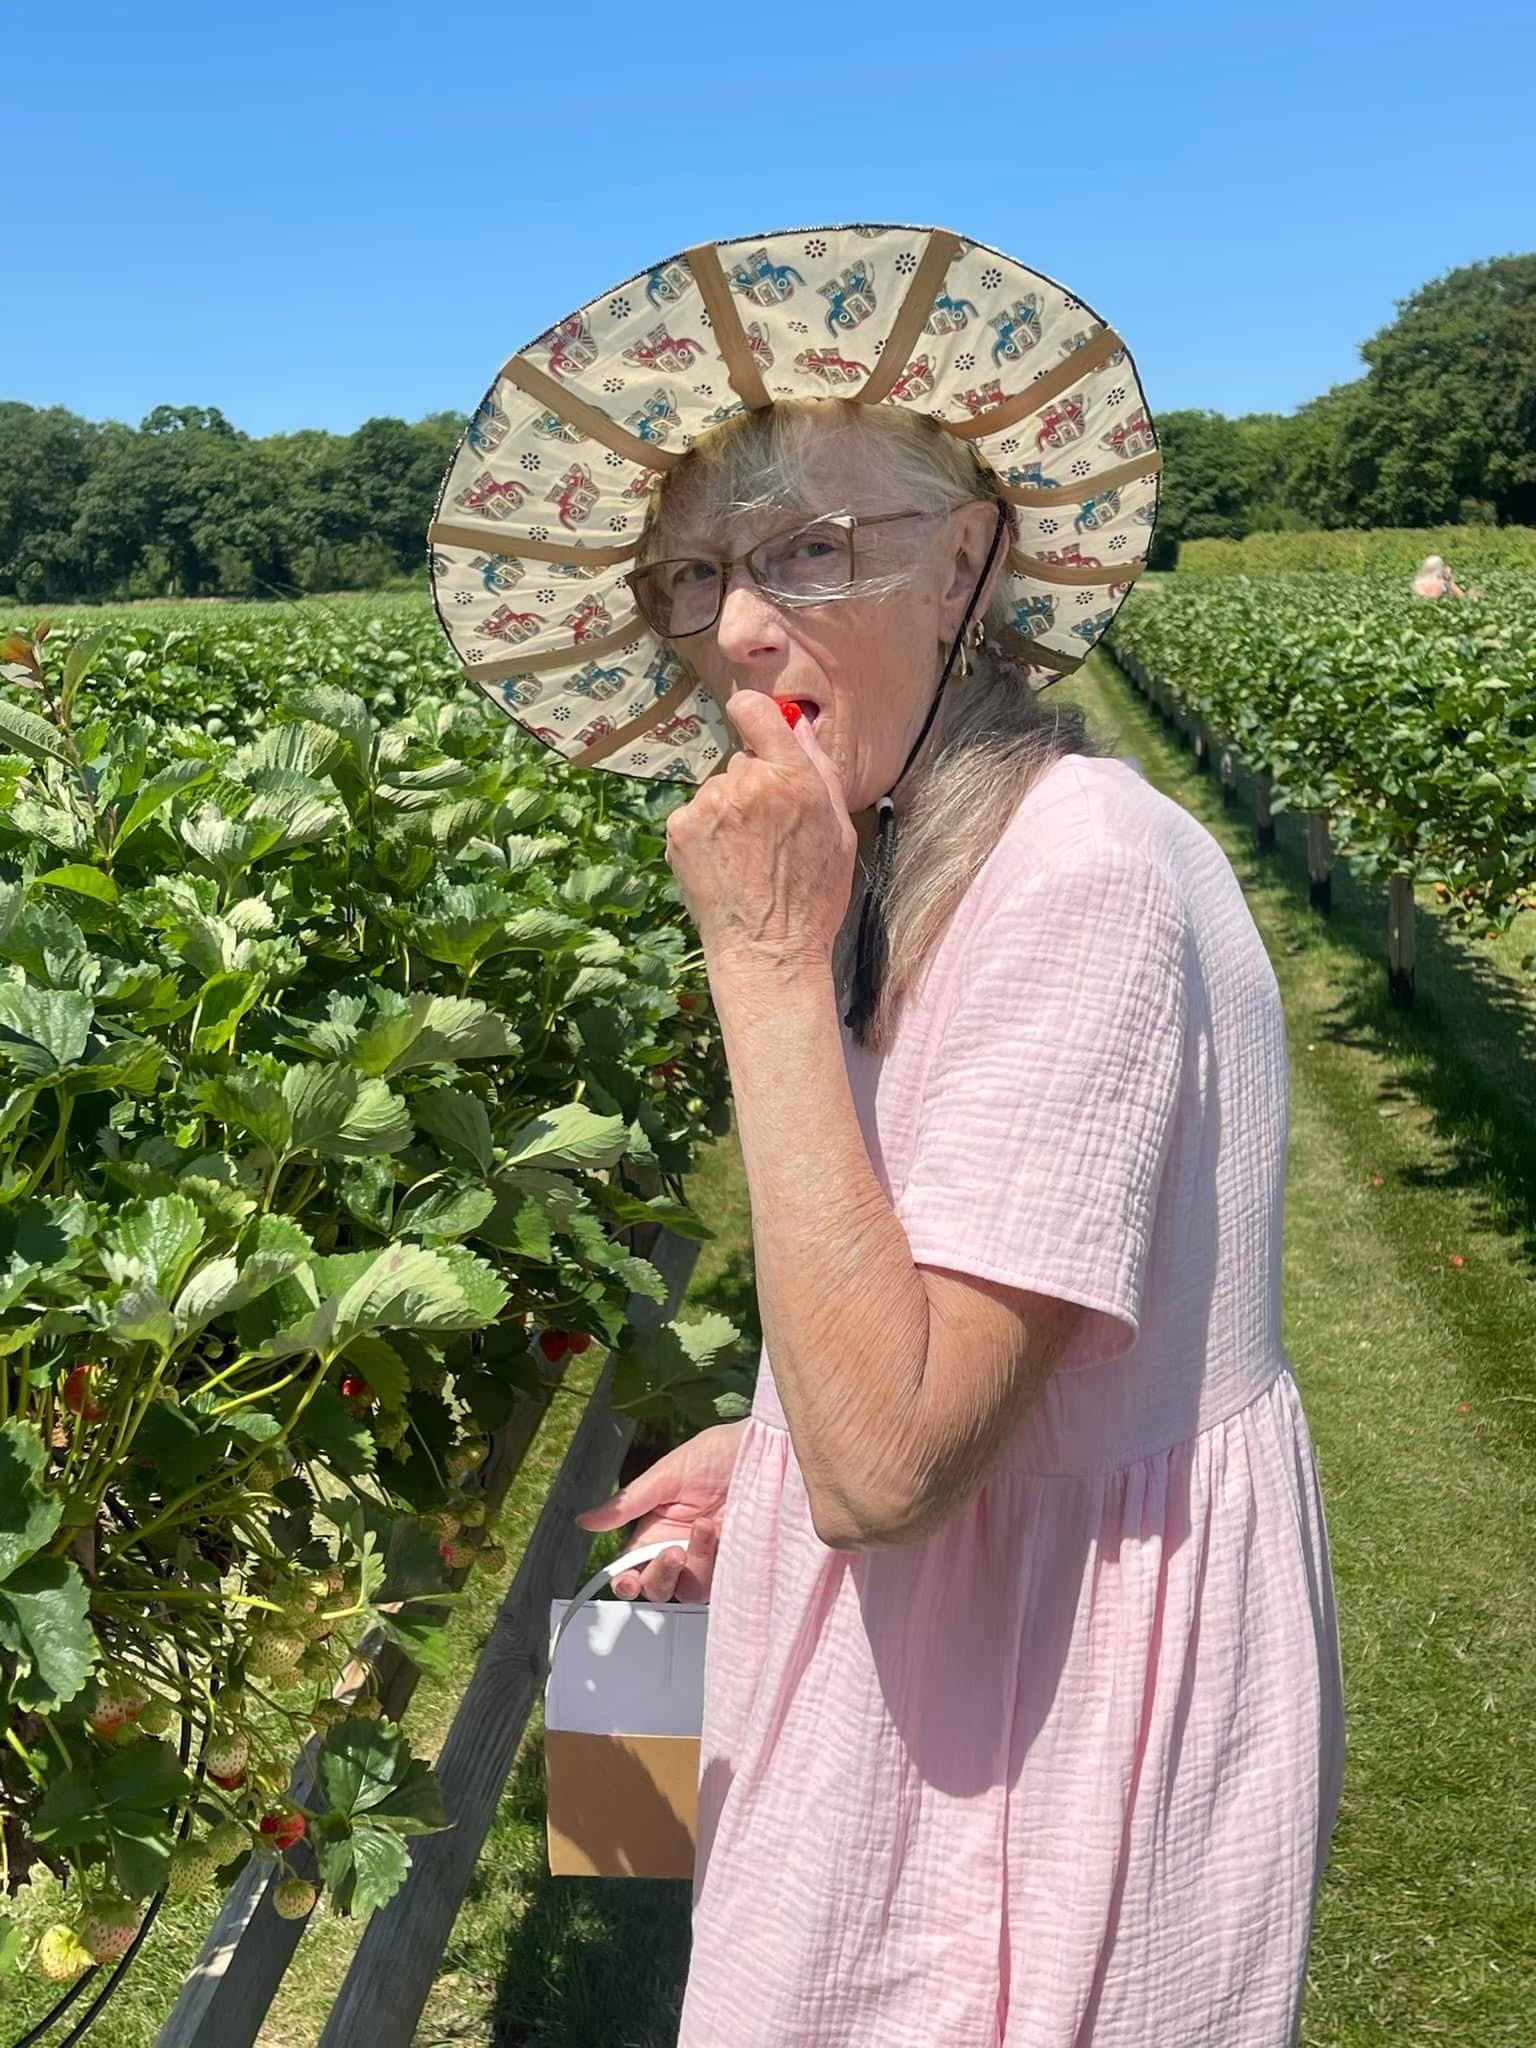 Sharon picking strawberries